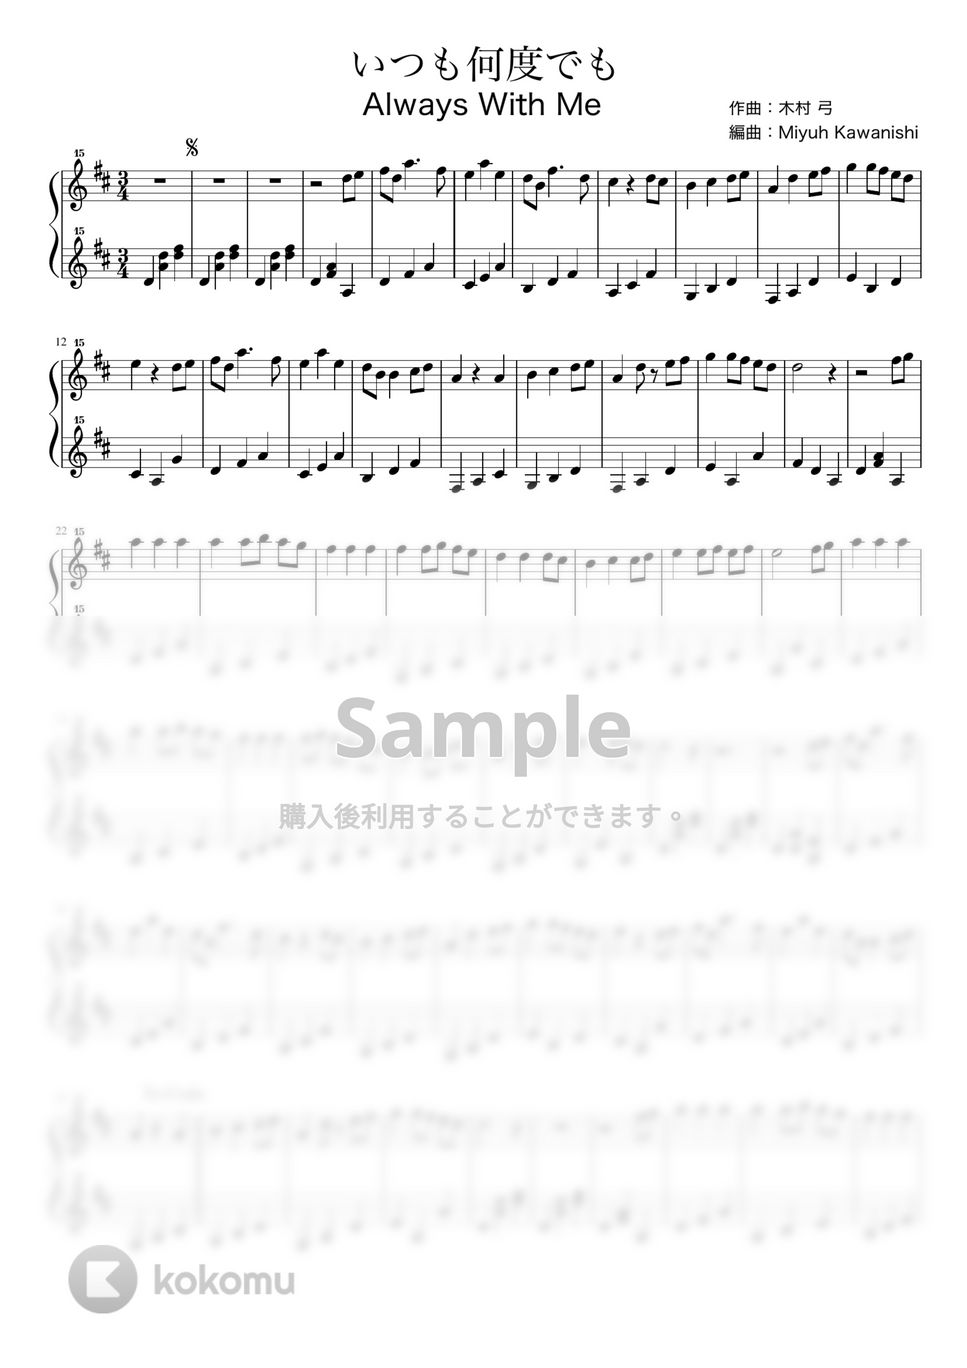 木村弓 - いつも何度でも (千と千尋の神隠し / トイピアノ / 32鍵盤) by 川西三裕